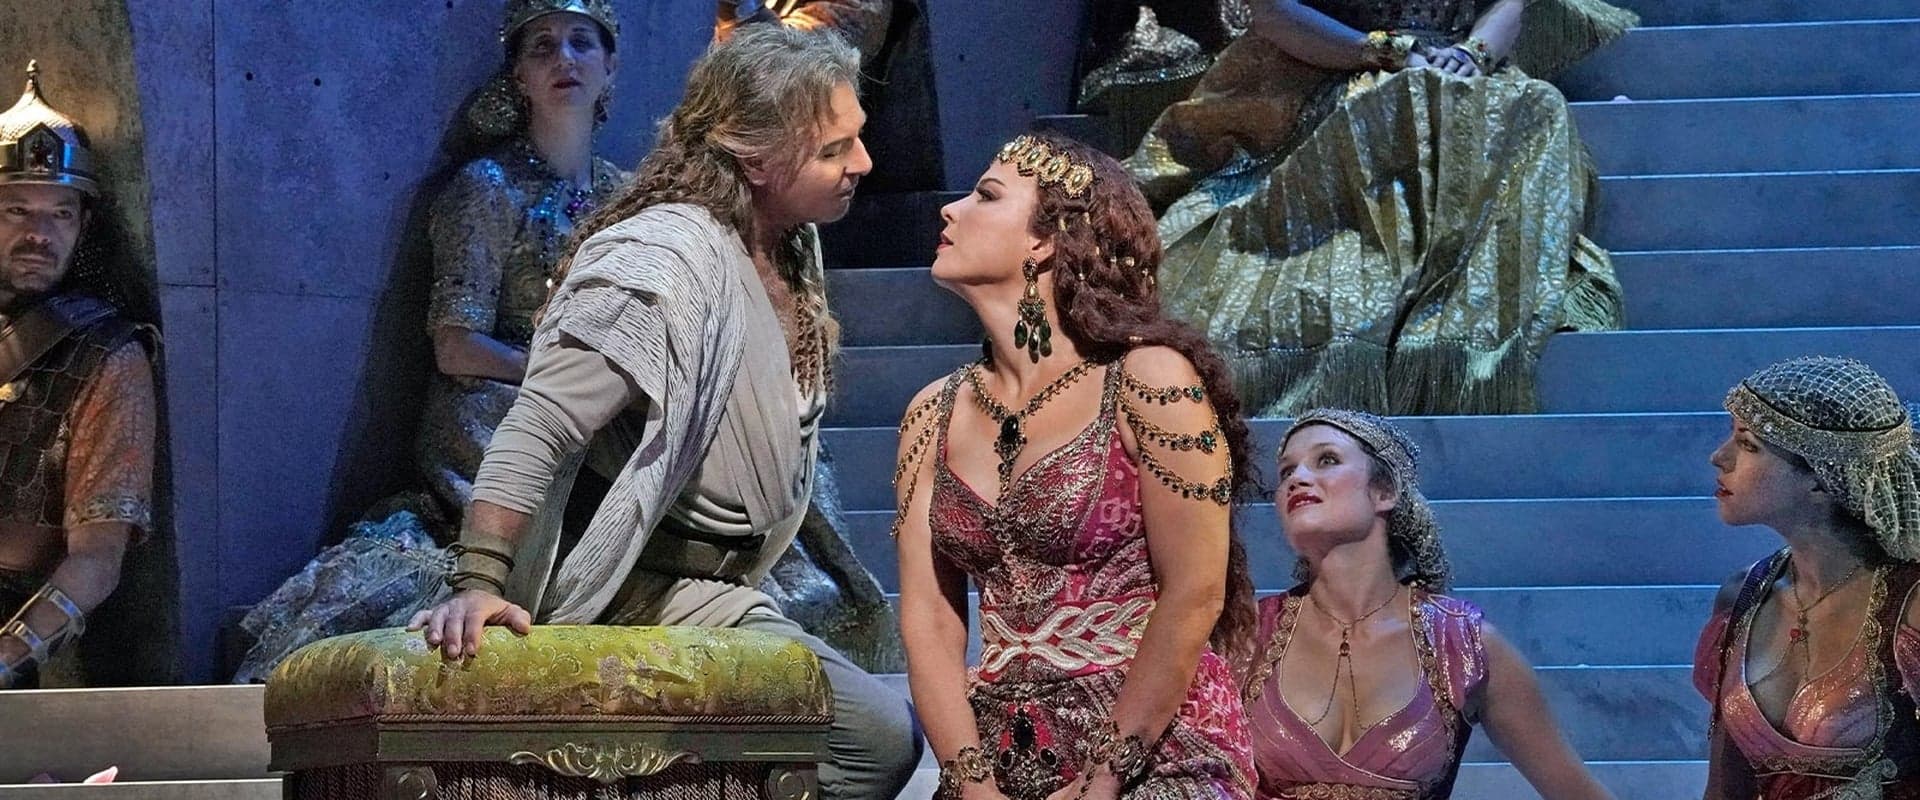 The Metropolitan Opera: Saint-Saëns's Samson et Dalila